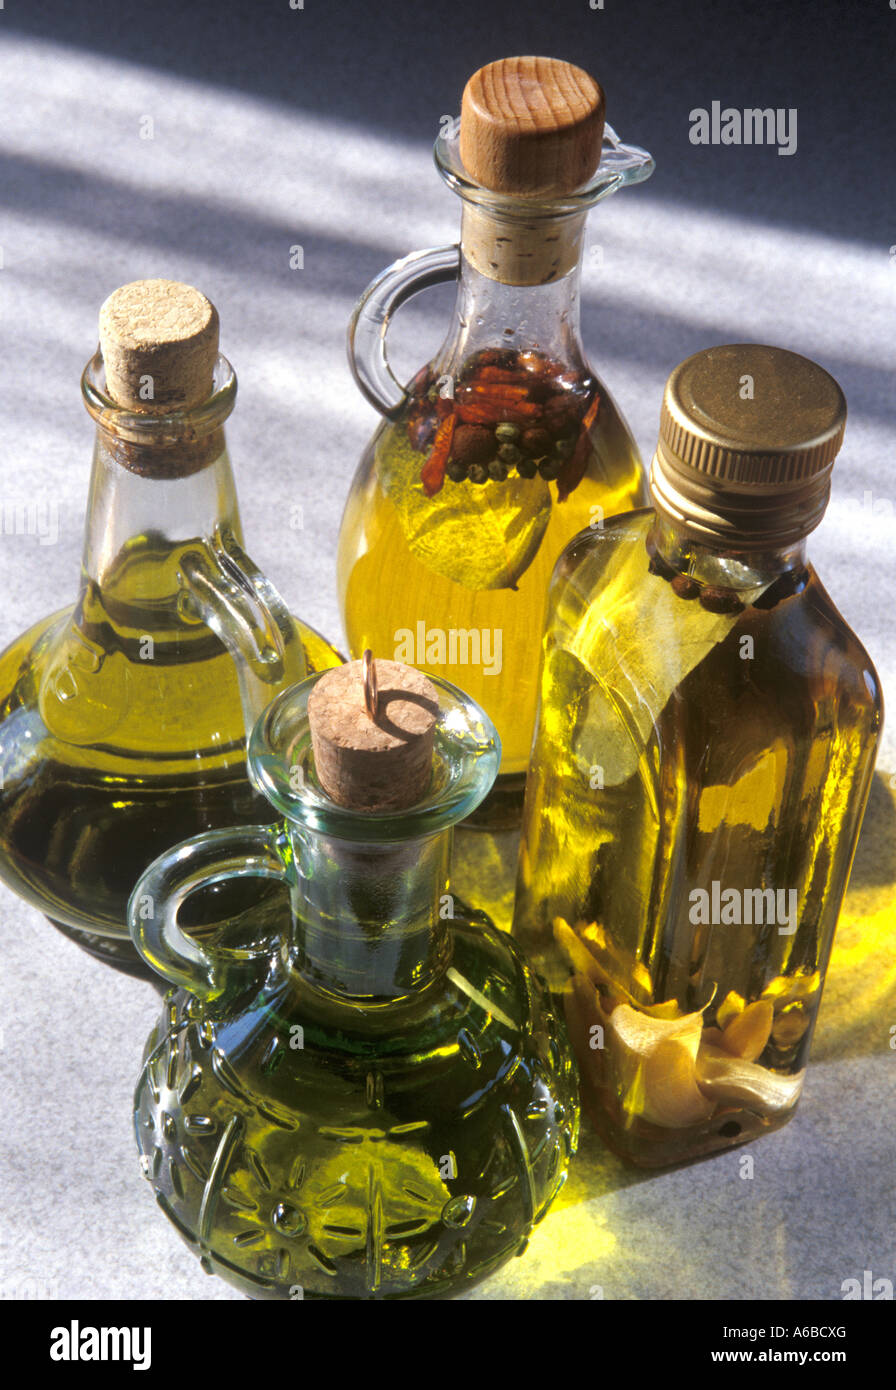 Olivenoel, Olive oil Stock Photo